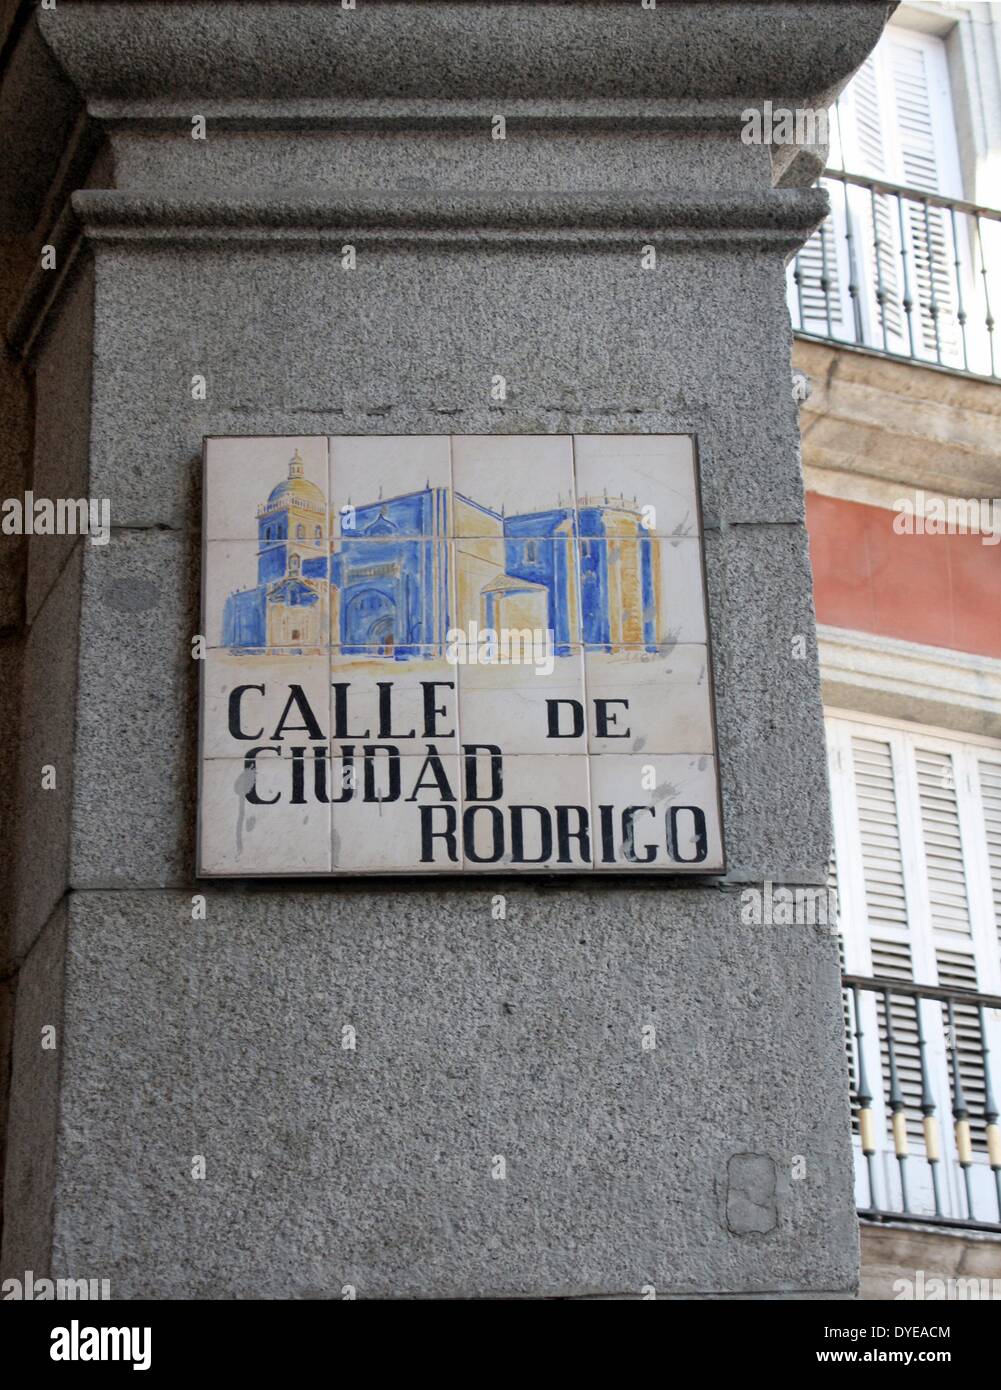 Straßenschild nach Ciudad Rodrigo in Madrid genannt. Ein historisch-künstlerischen Ort, berühmt für seine befestigte Stadt im Westen der Provinz Salamanca. Es Mauern umschließen eine reiche Erbe der bürgerlichen und religiösen Gebäuden, von denen die wichtigsten sind die Kathedrale und das Schloss. Madrid. Spanien 2013 Stockfoto